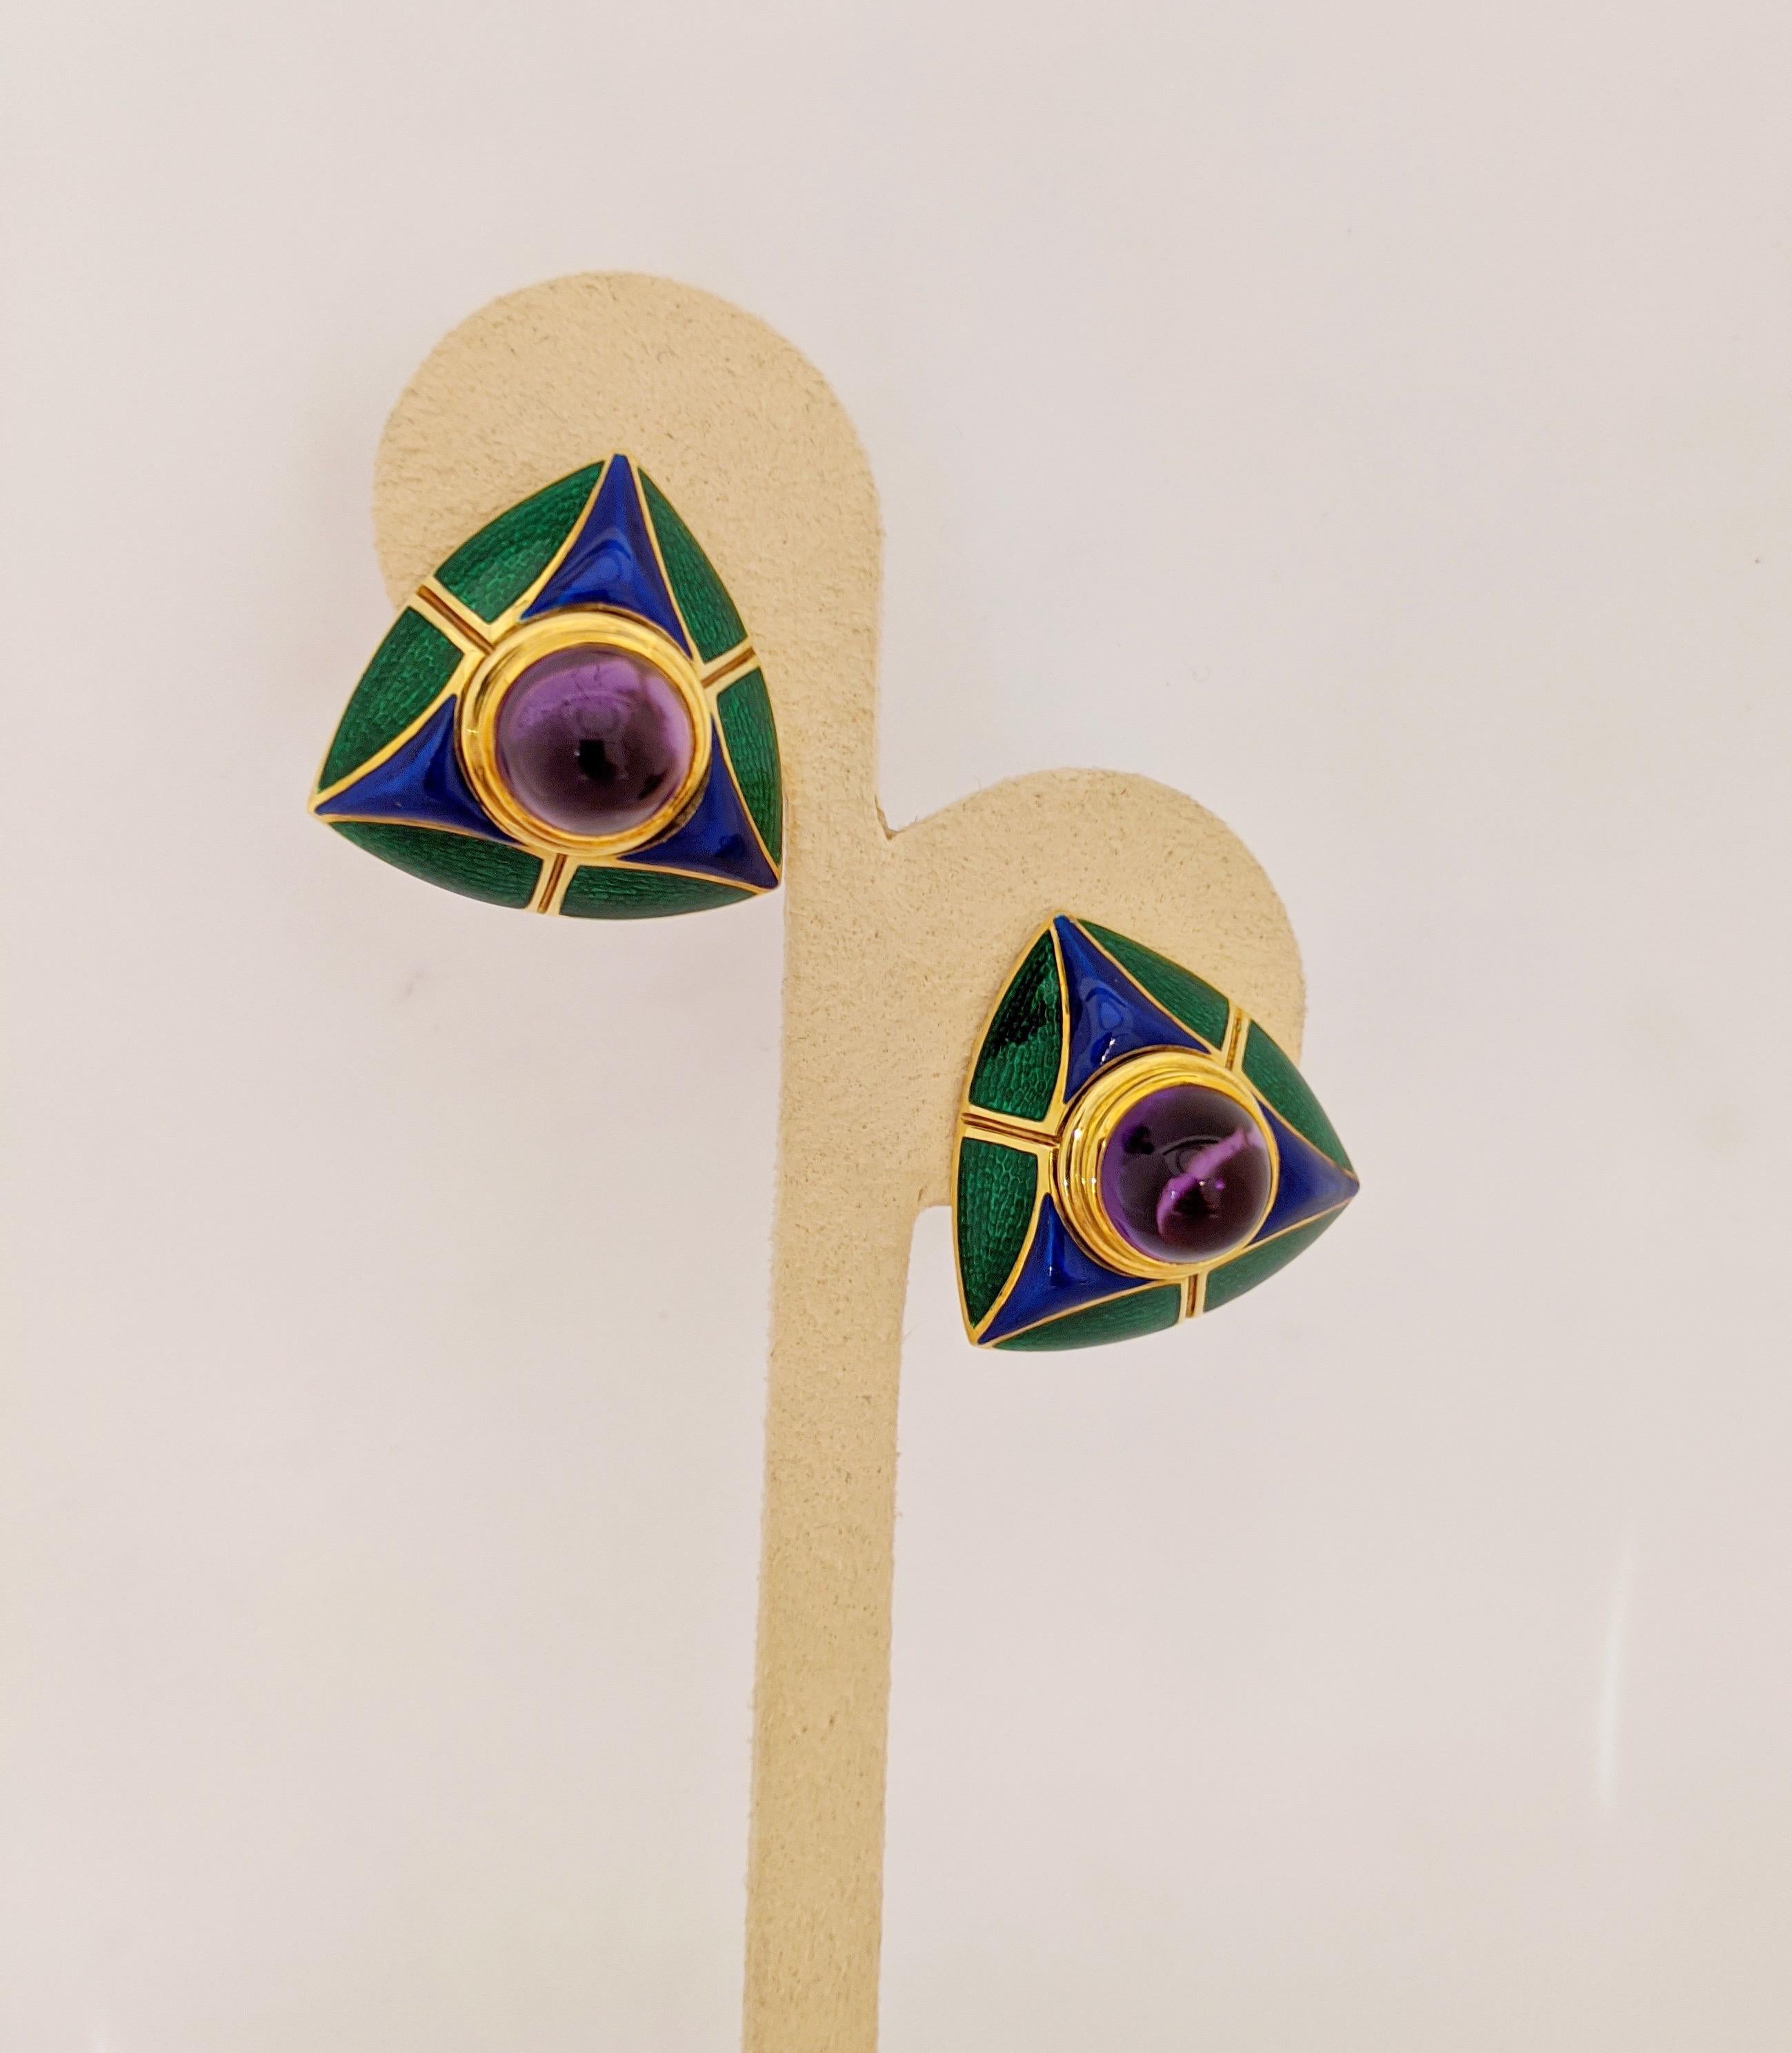 Diese dreieckigen Ohrringe sind aus 18 Karat Gelbgold gefertigt und mit einem runden Cabachon Amethyst besetzt. Die Ohrringe haben ein geometrisches Muster aus blauer und grüner Emaille. Die grüne Emaille wurde für zusätzliche Tiefe schön